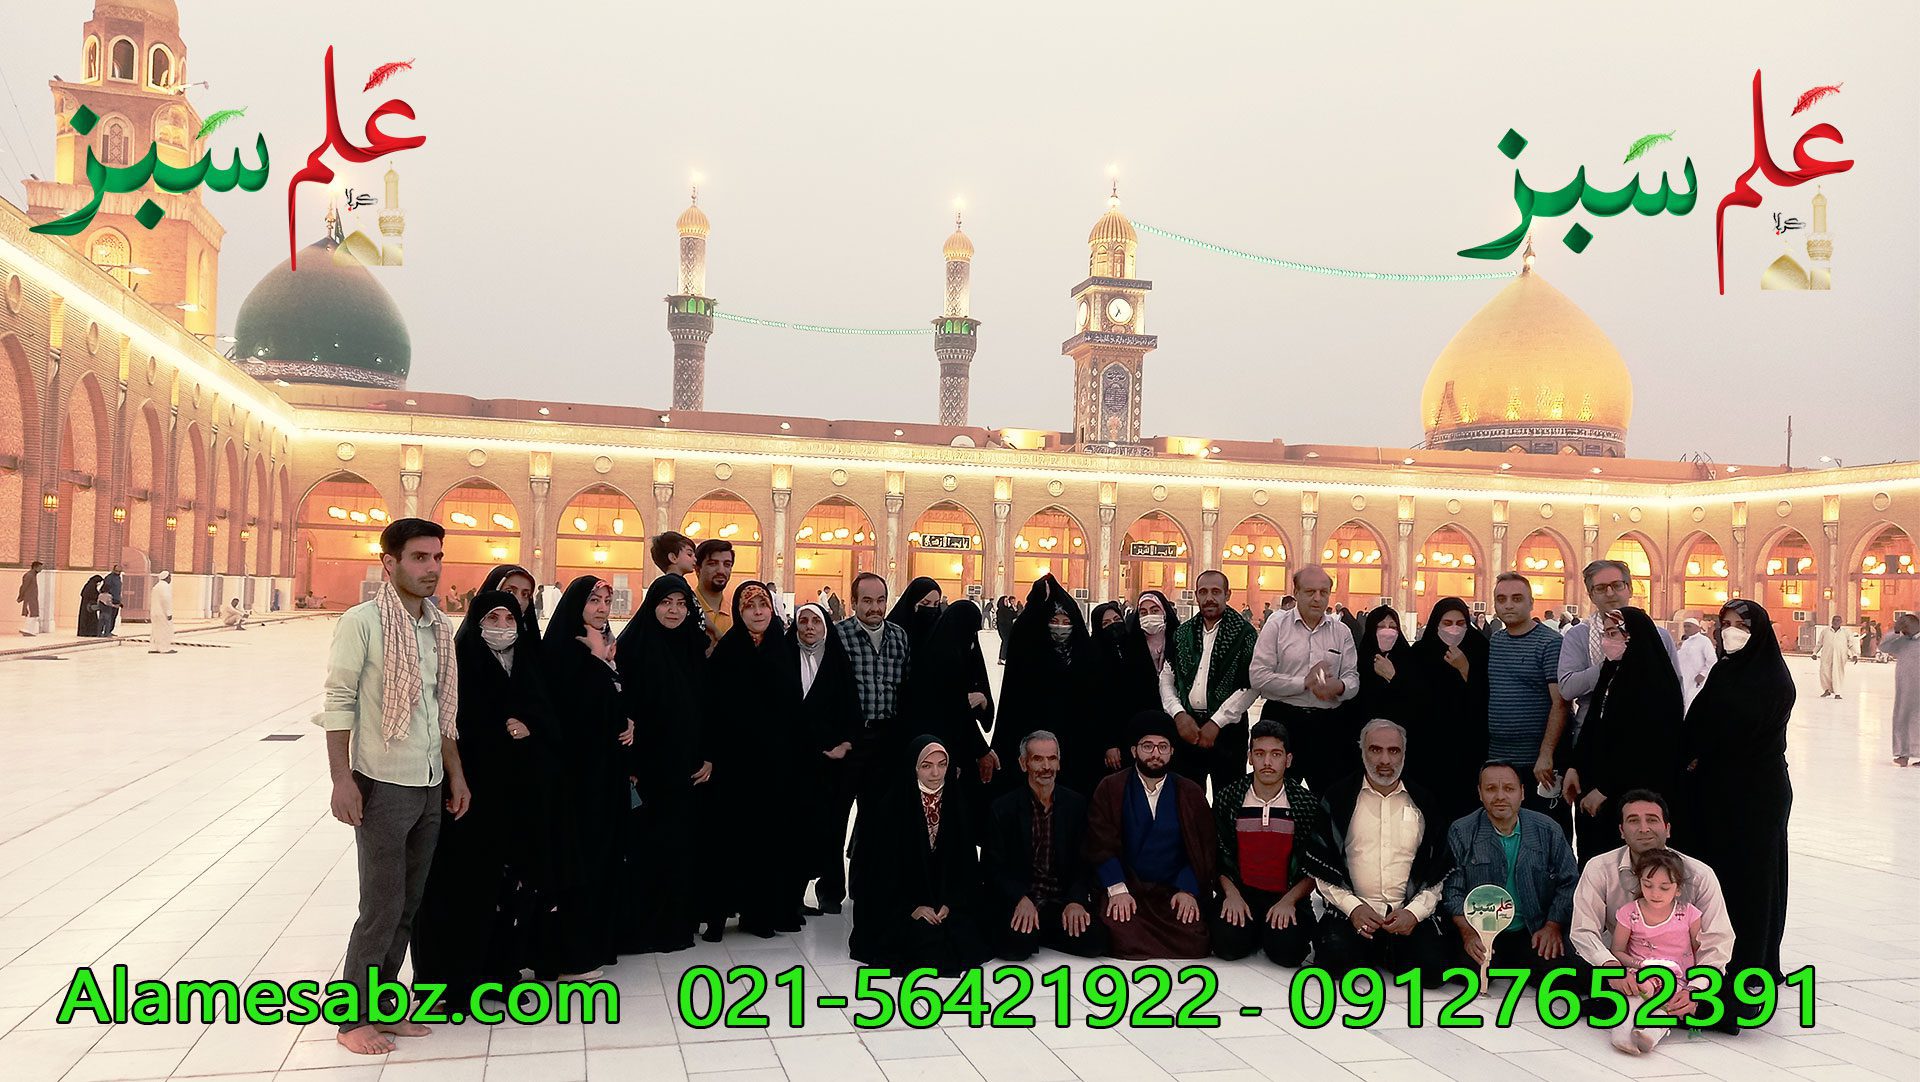 مسجد کوفه شرکت زیارتی علم سبز